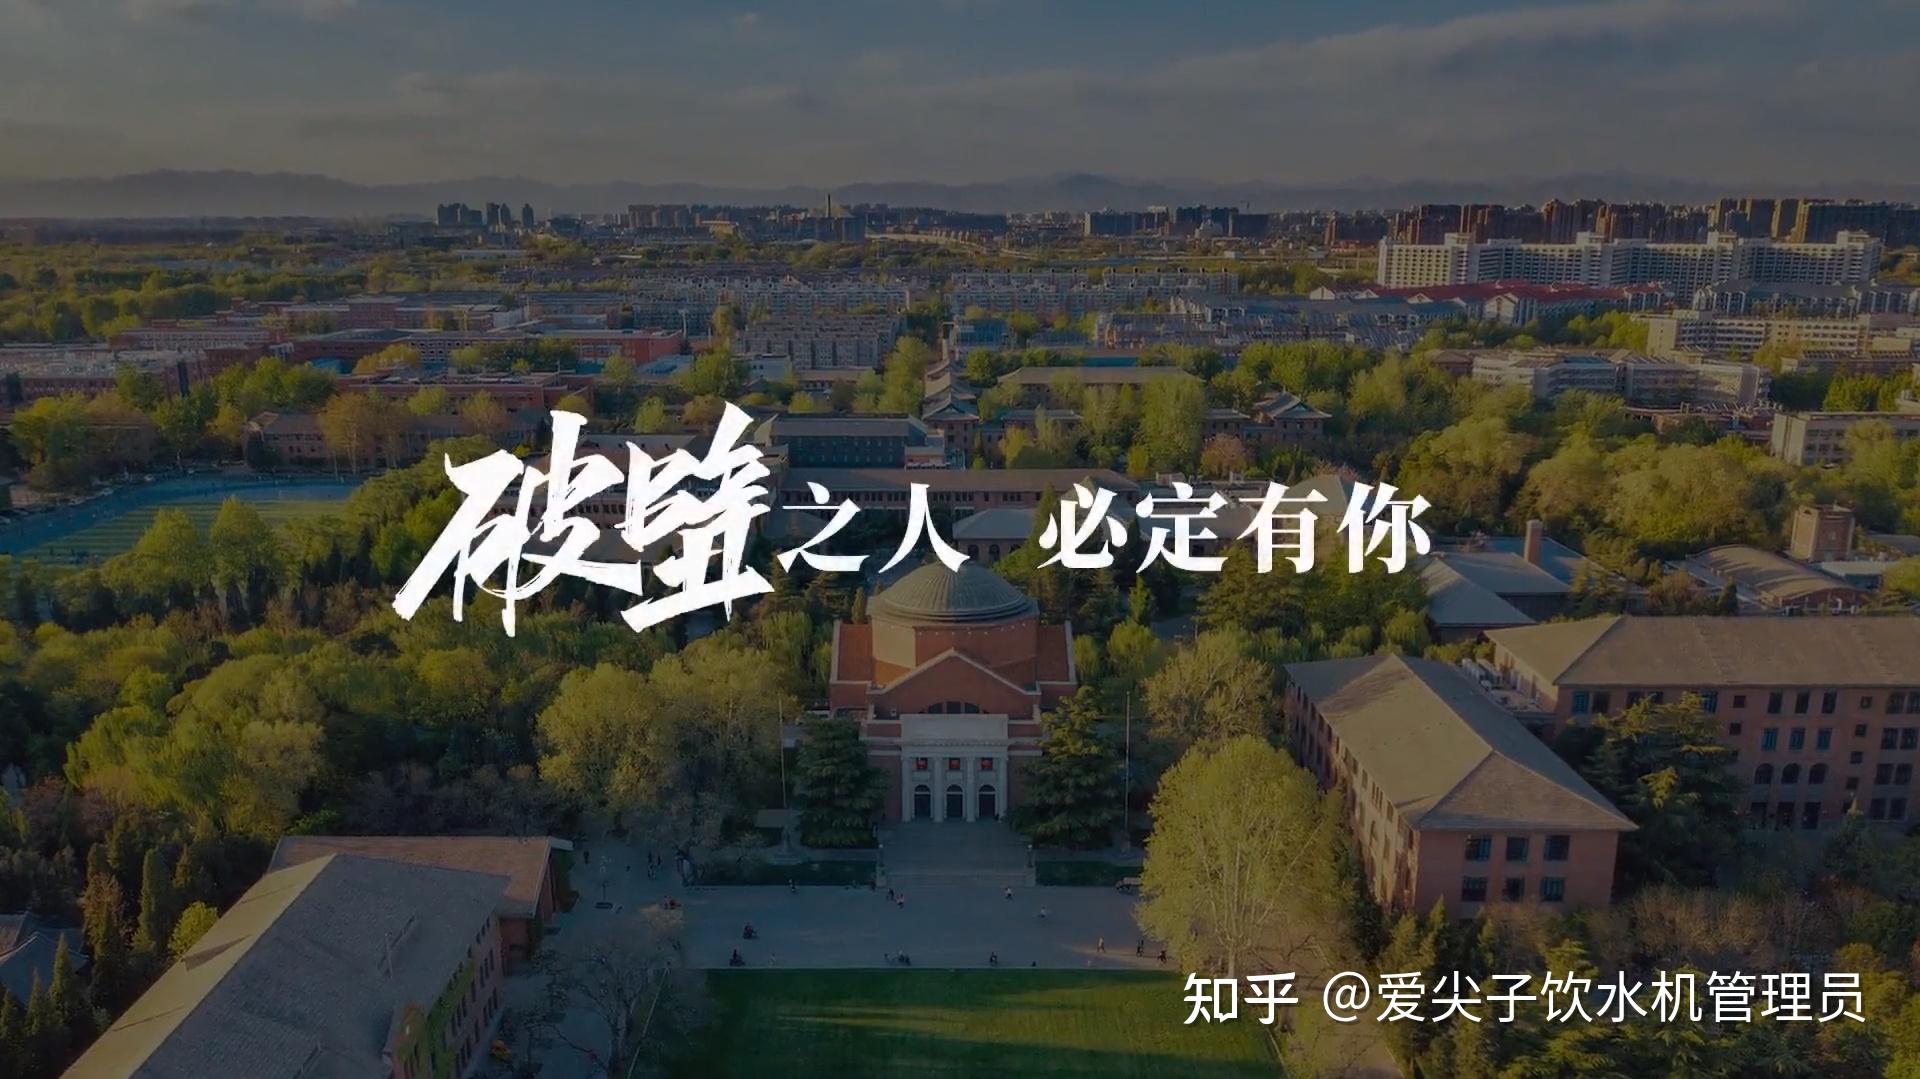 如何评价清华大学高考前发布的 2021 年招生宣传片《破壁少年》?